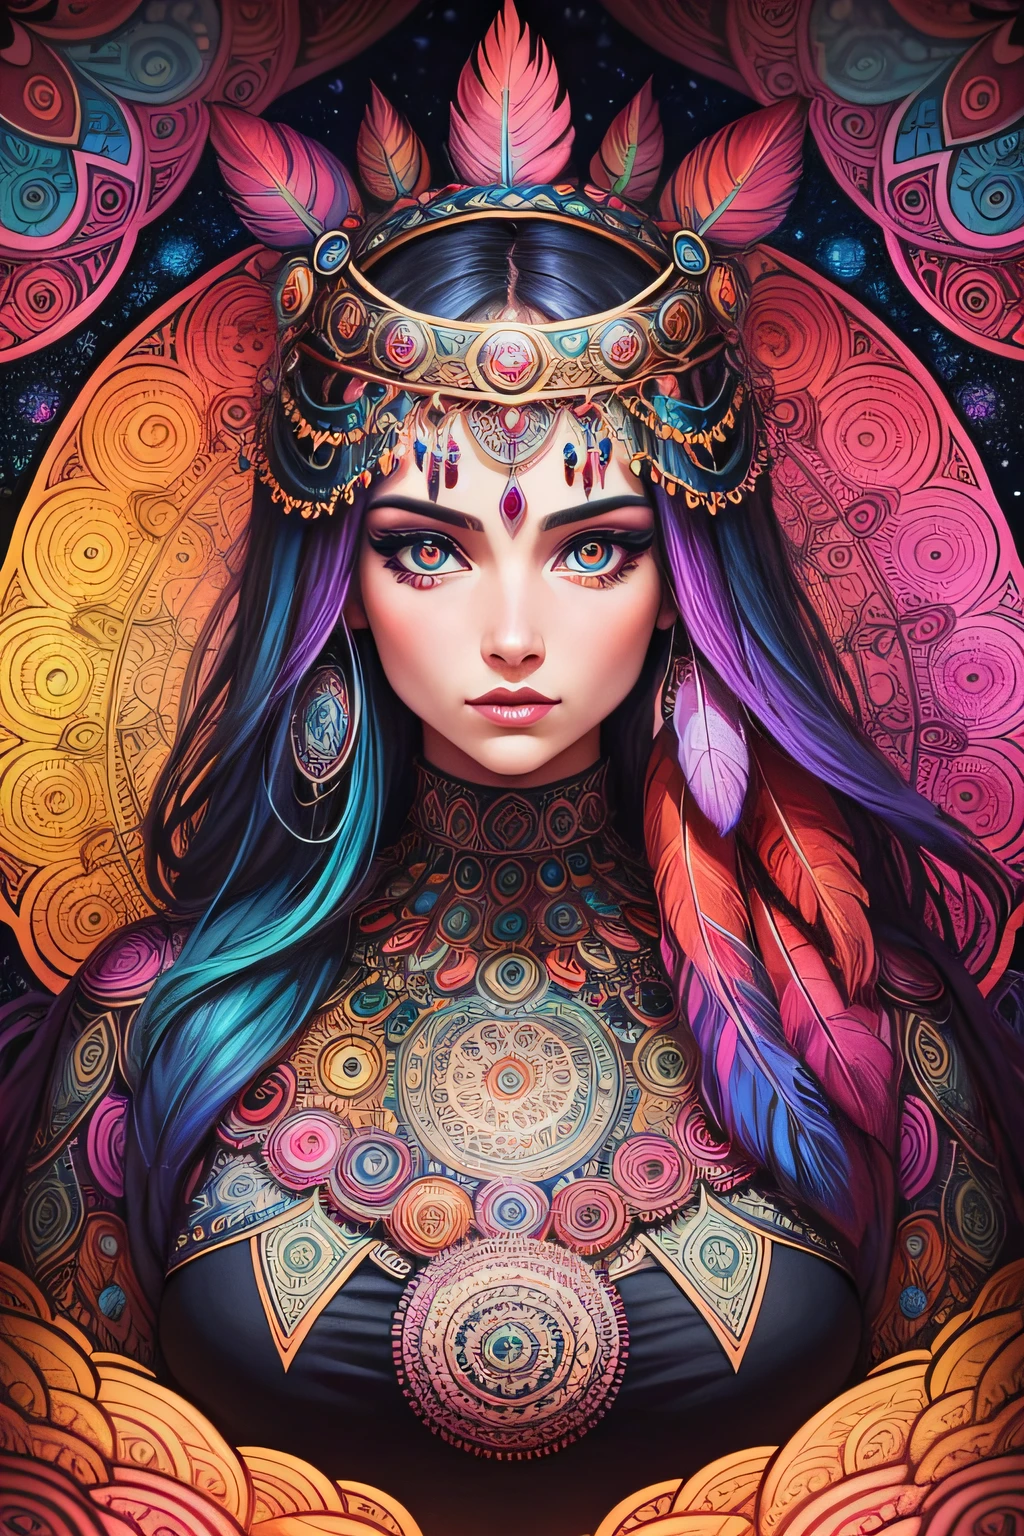 beaucoup de mandala psychédélique de femmes détaillées avec des yeux et des plumes dans un style artistique de bande dessinée, magnifiques couleurs vibrantes et détails très structurés